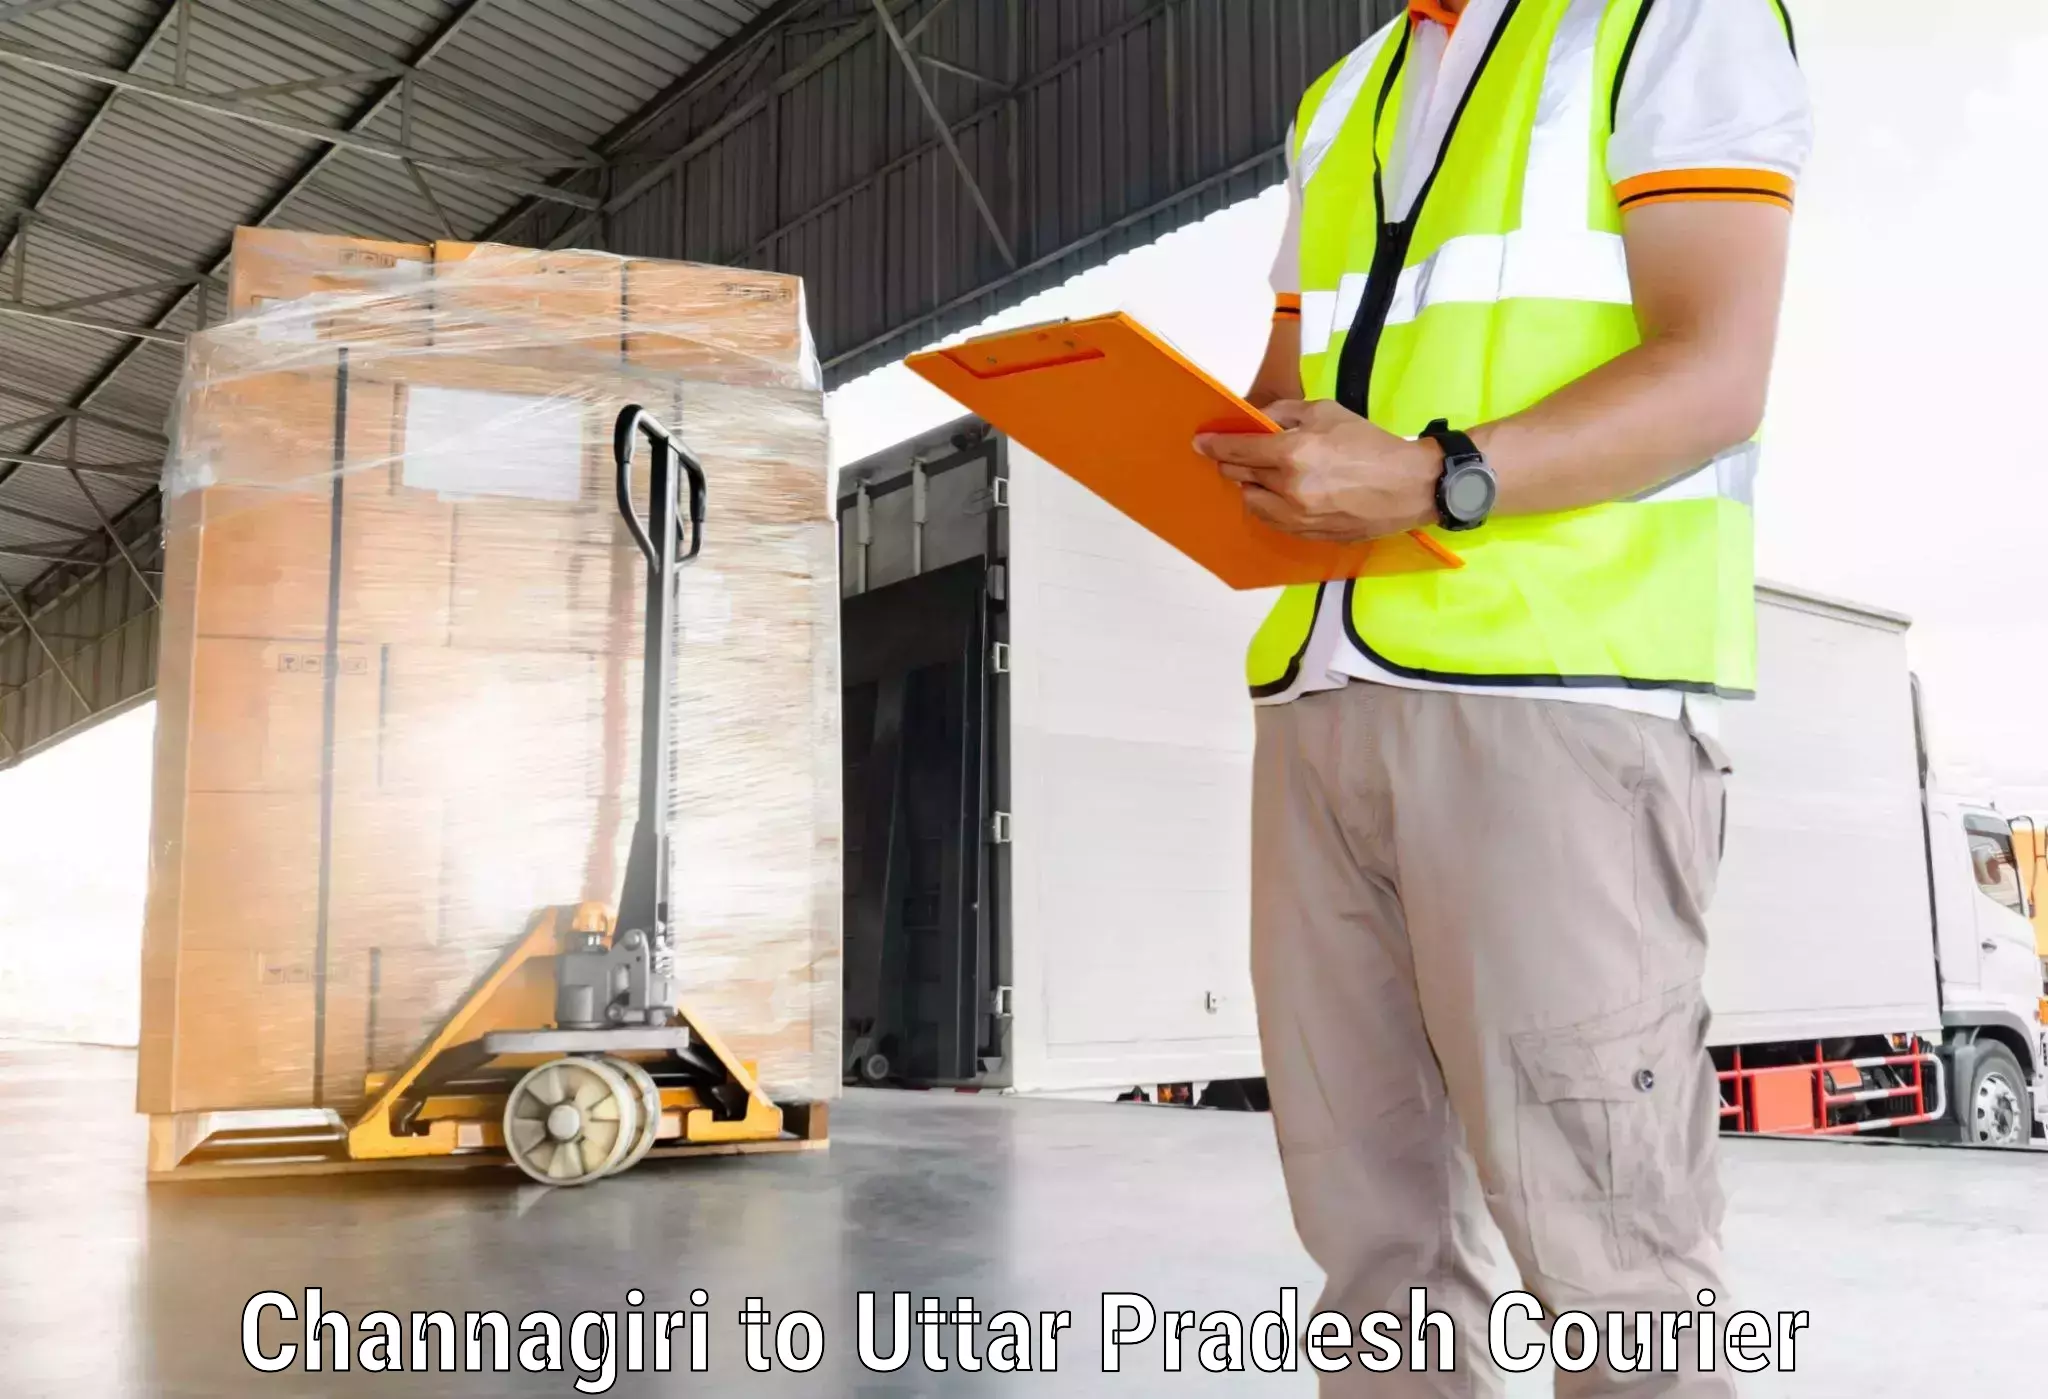 Ocean freight courier Channagiri to Rampur Maniharan